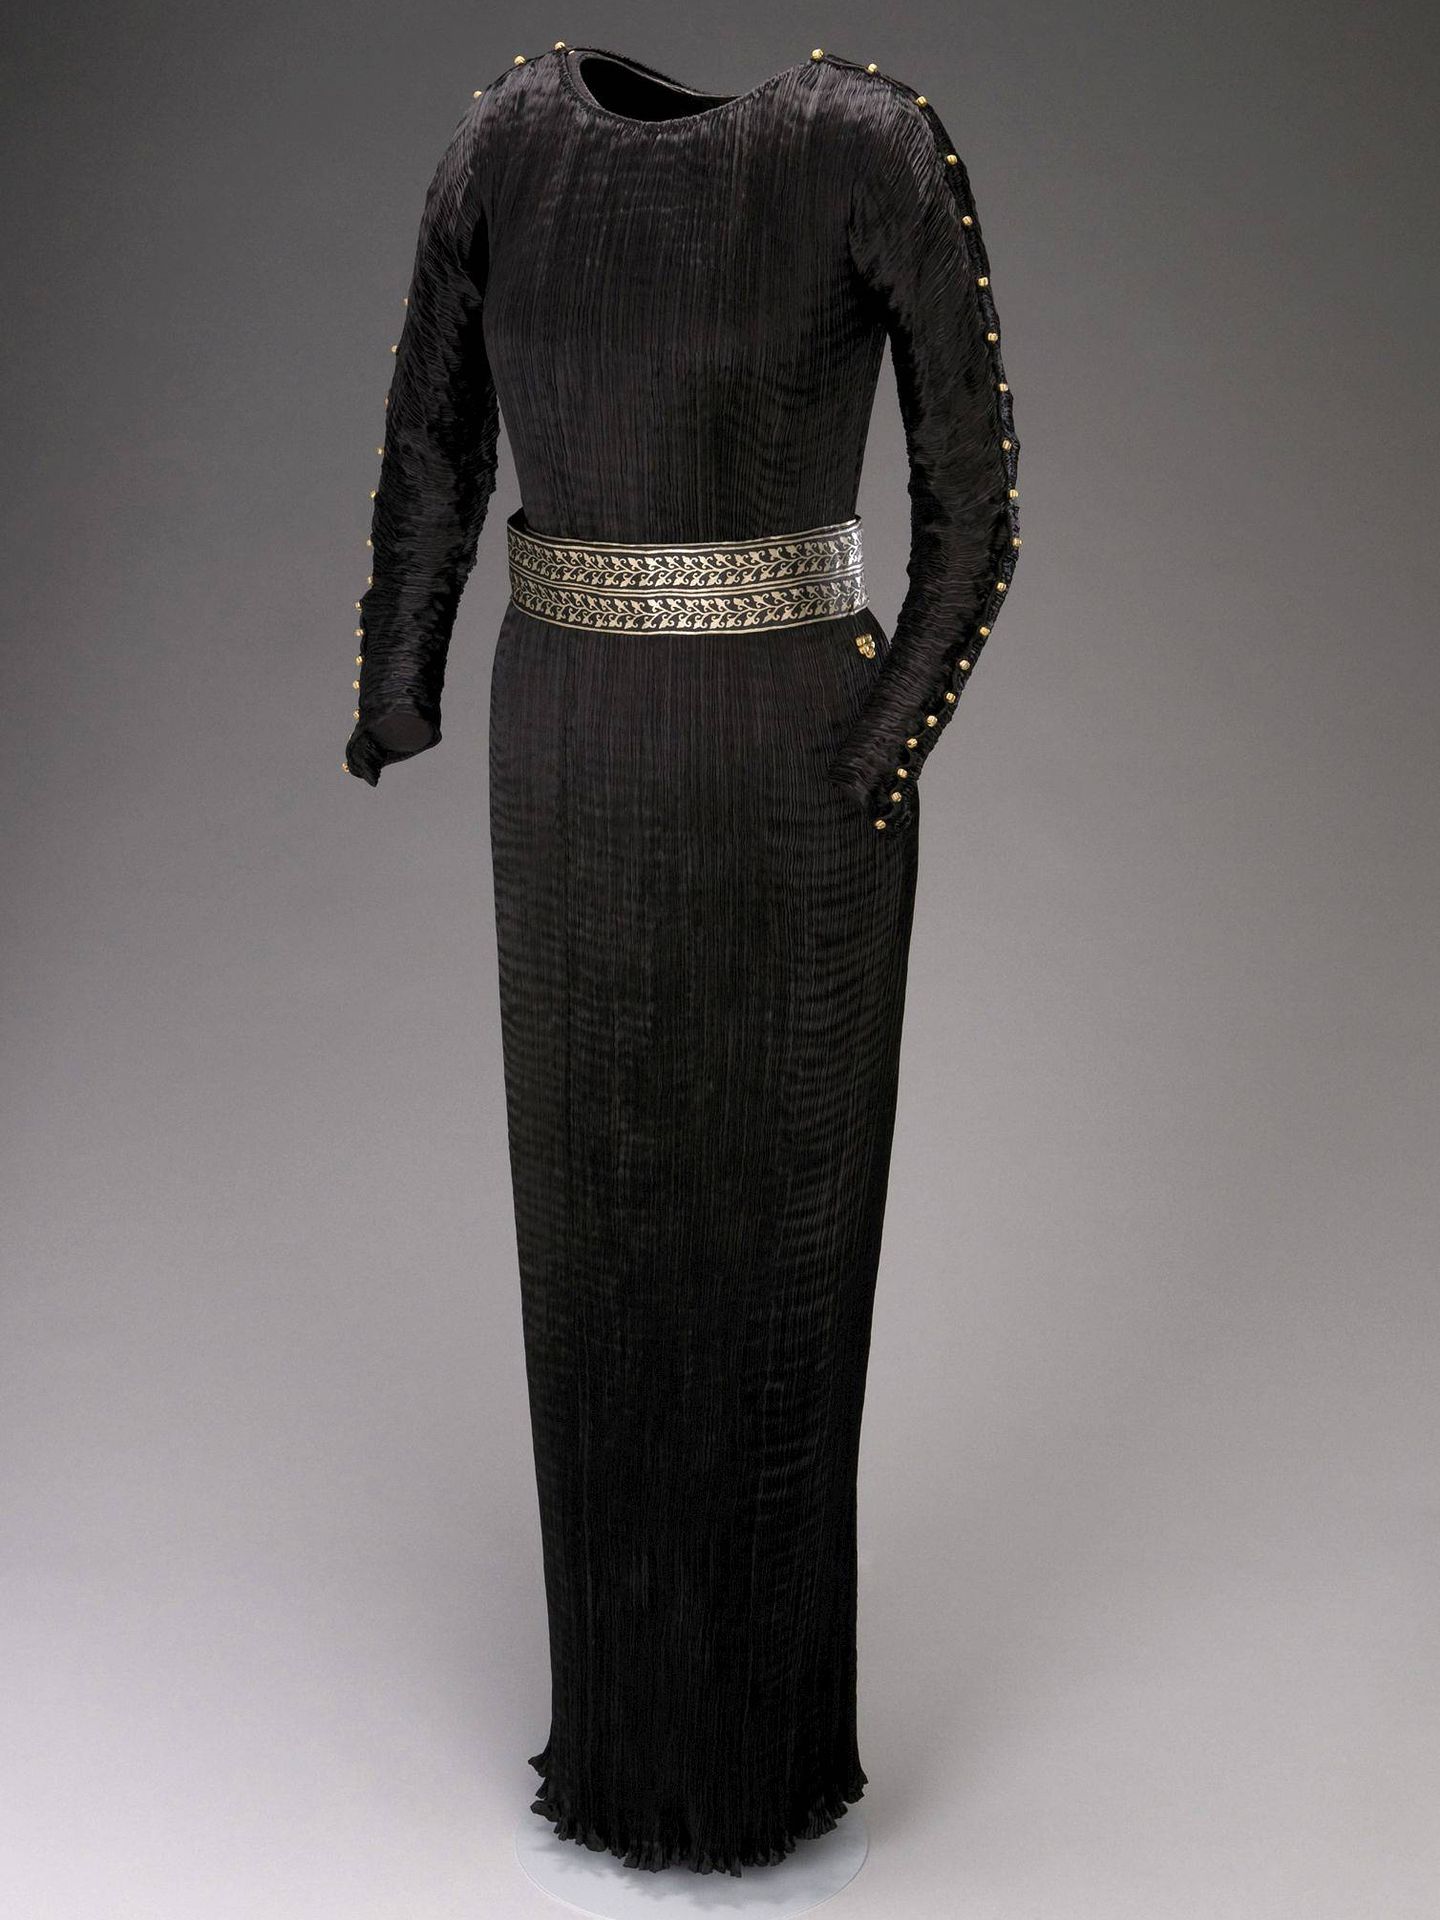 Vestido Delphos de Fortuny conservado en el Museo del Traje de Madrid. (EFE)